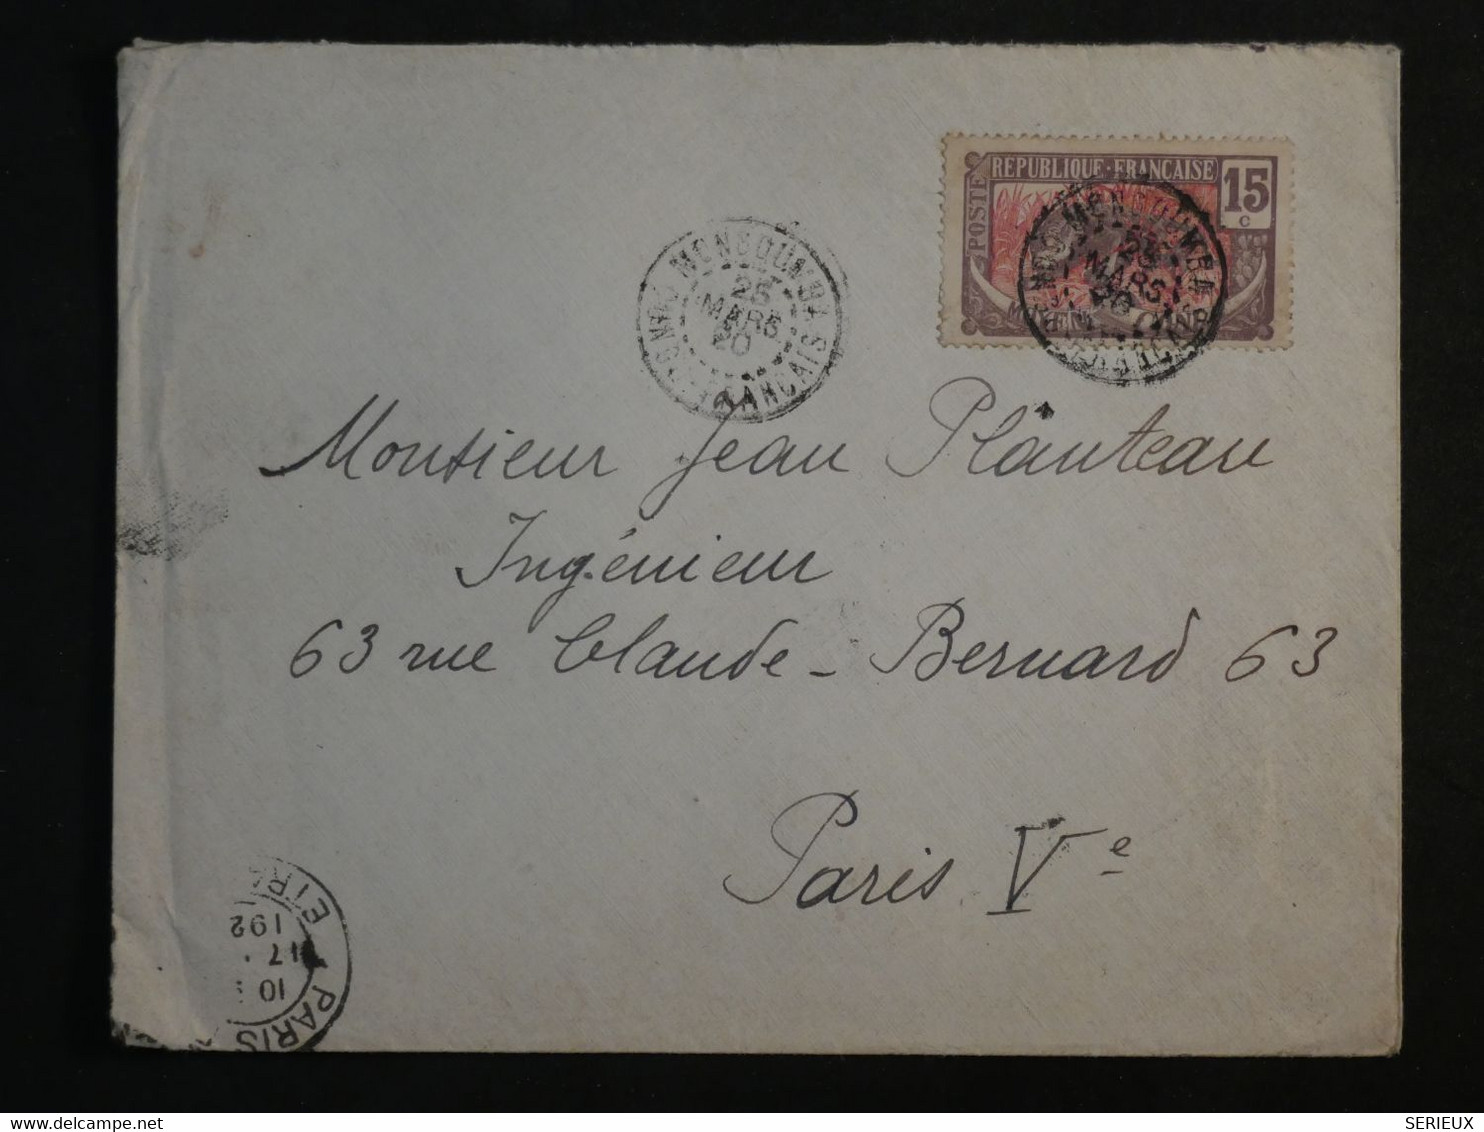 BM11  CAMEROUN CONGO FRANC.  BELLE  LETTRE 1920  PETIT BUREAU  MONGOUMBI ?  A PARIS FRANCE + +AFFRANCH. INTERESSANT++++ - Covers & Documents